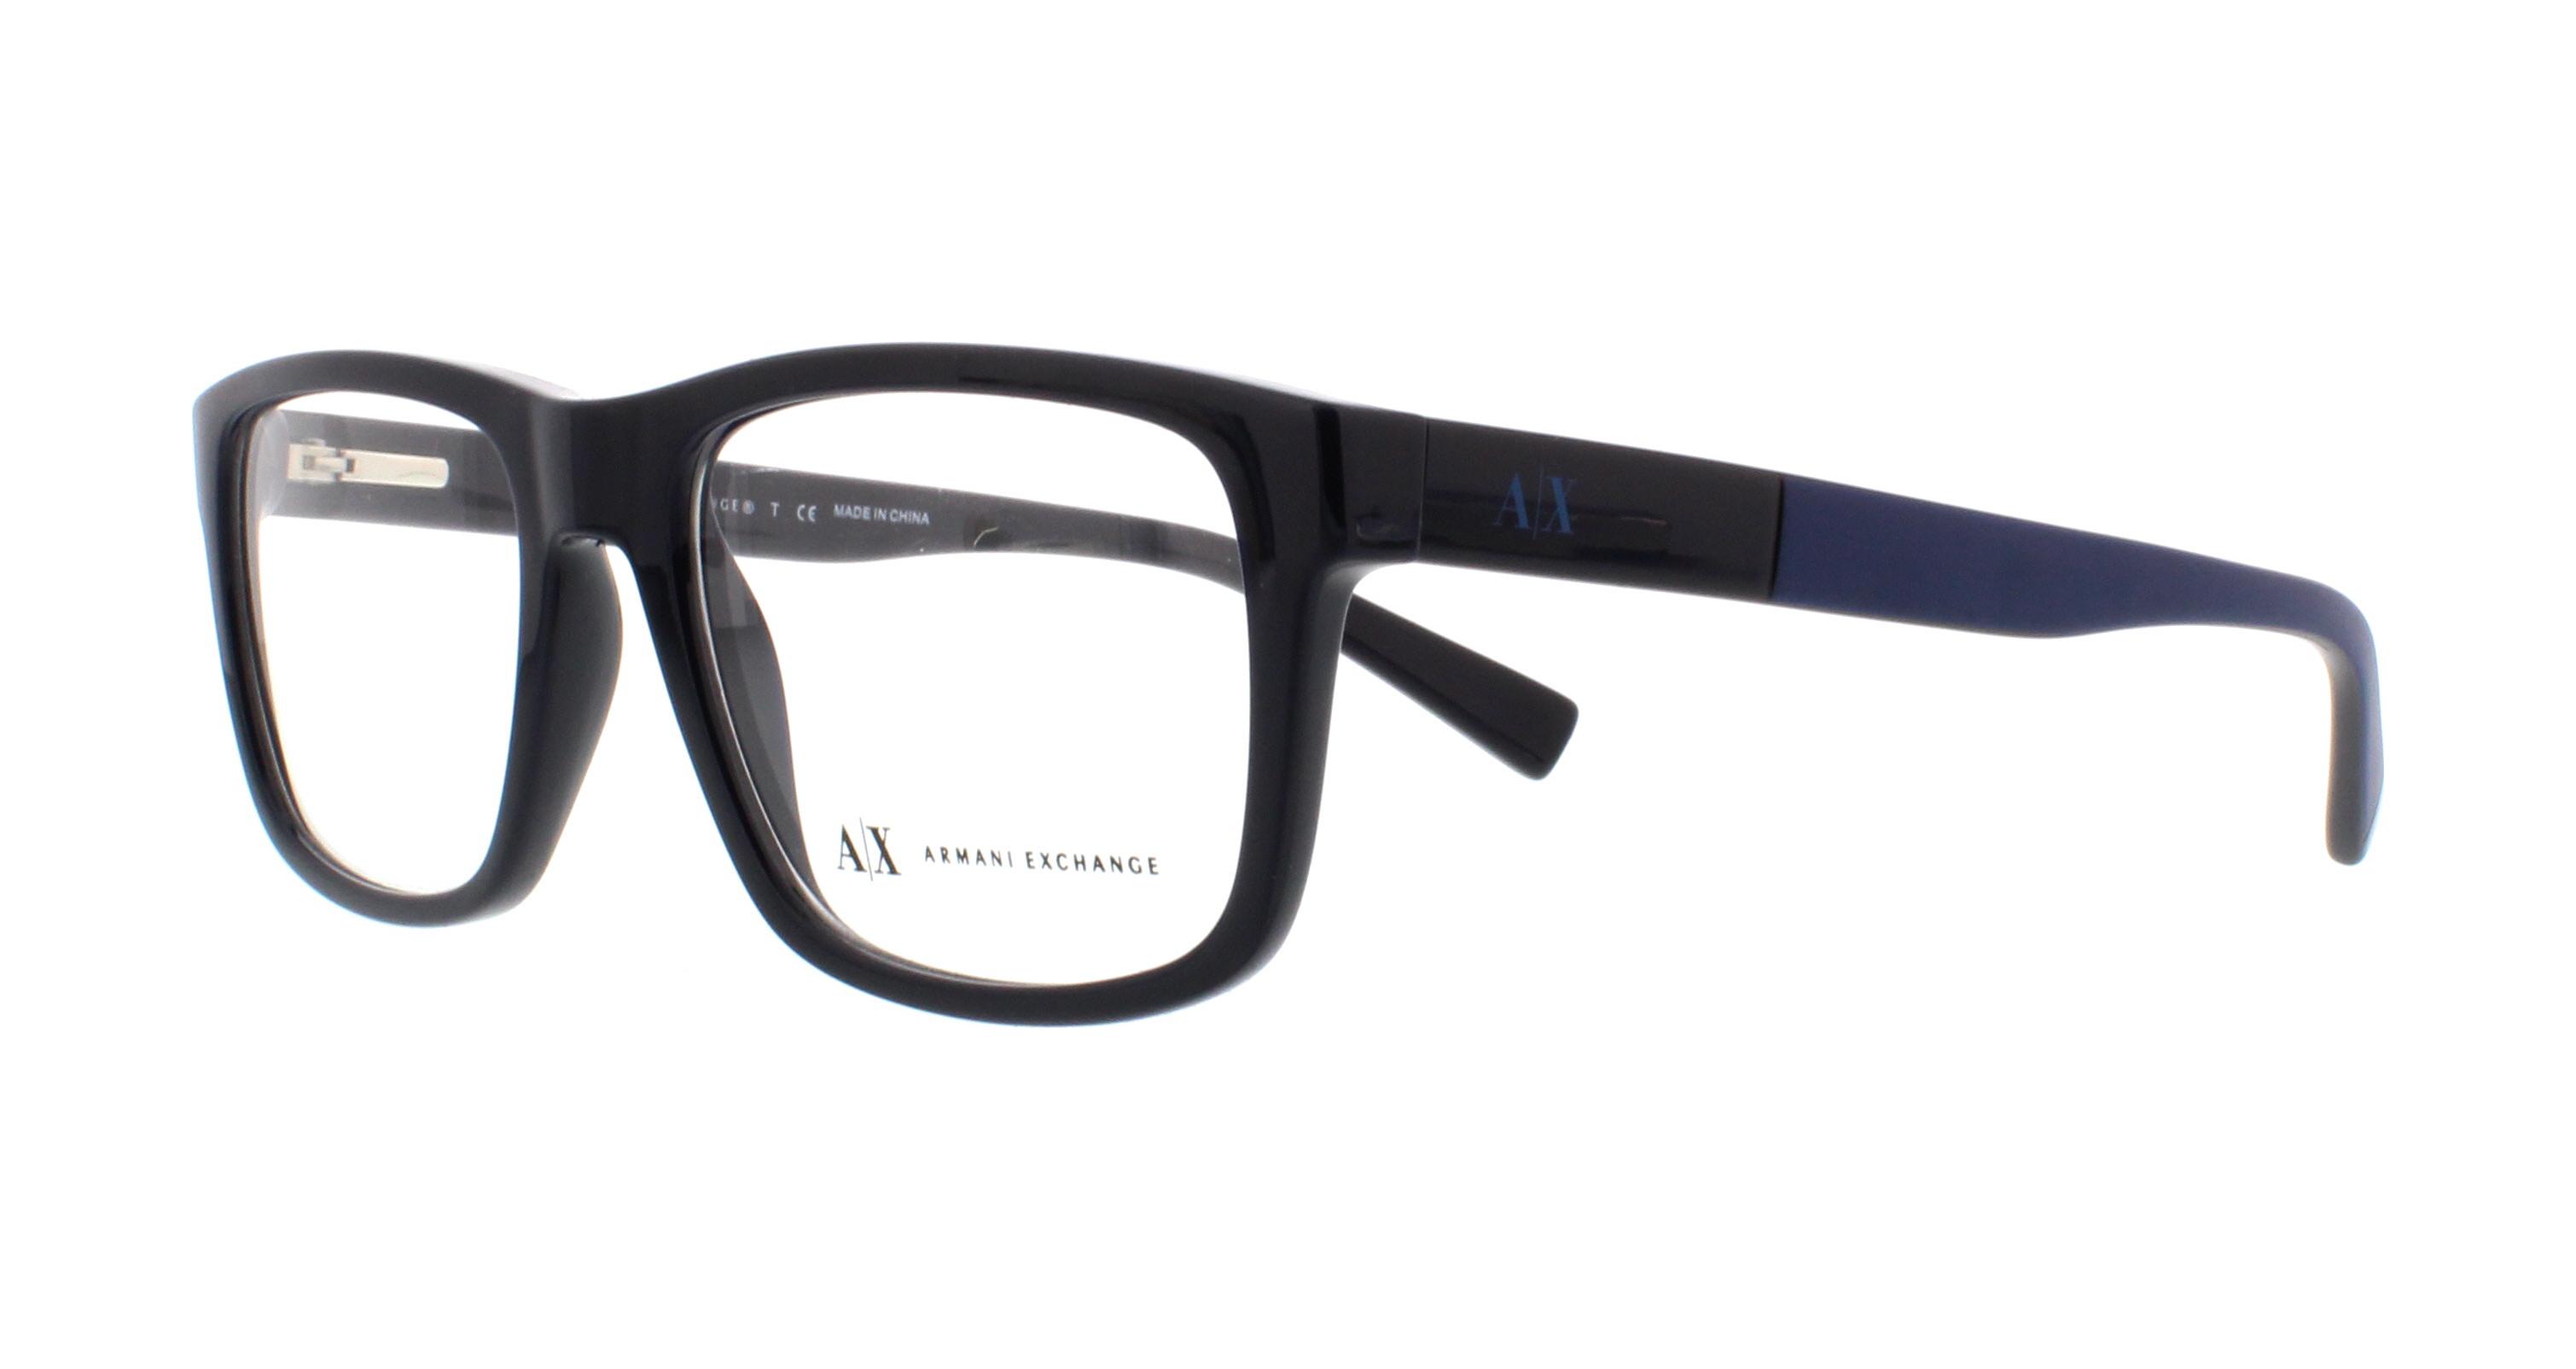 AX3025 Exchange Eyeglasses Designer Frames Armani Outlet.